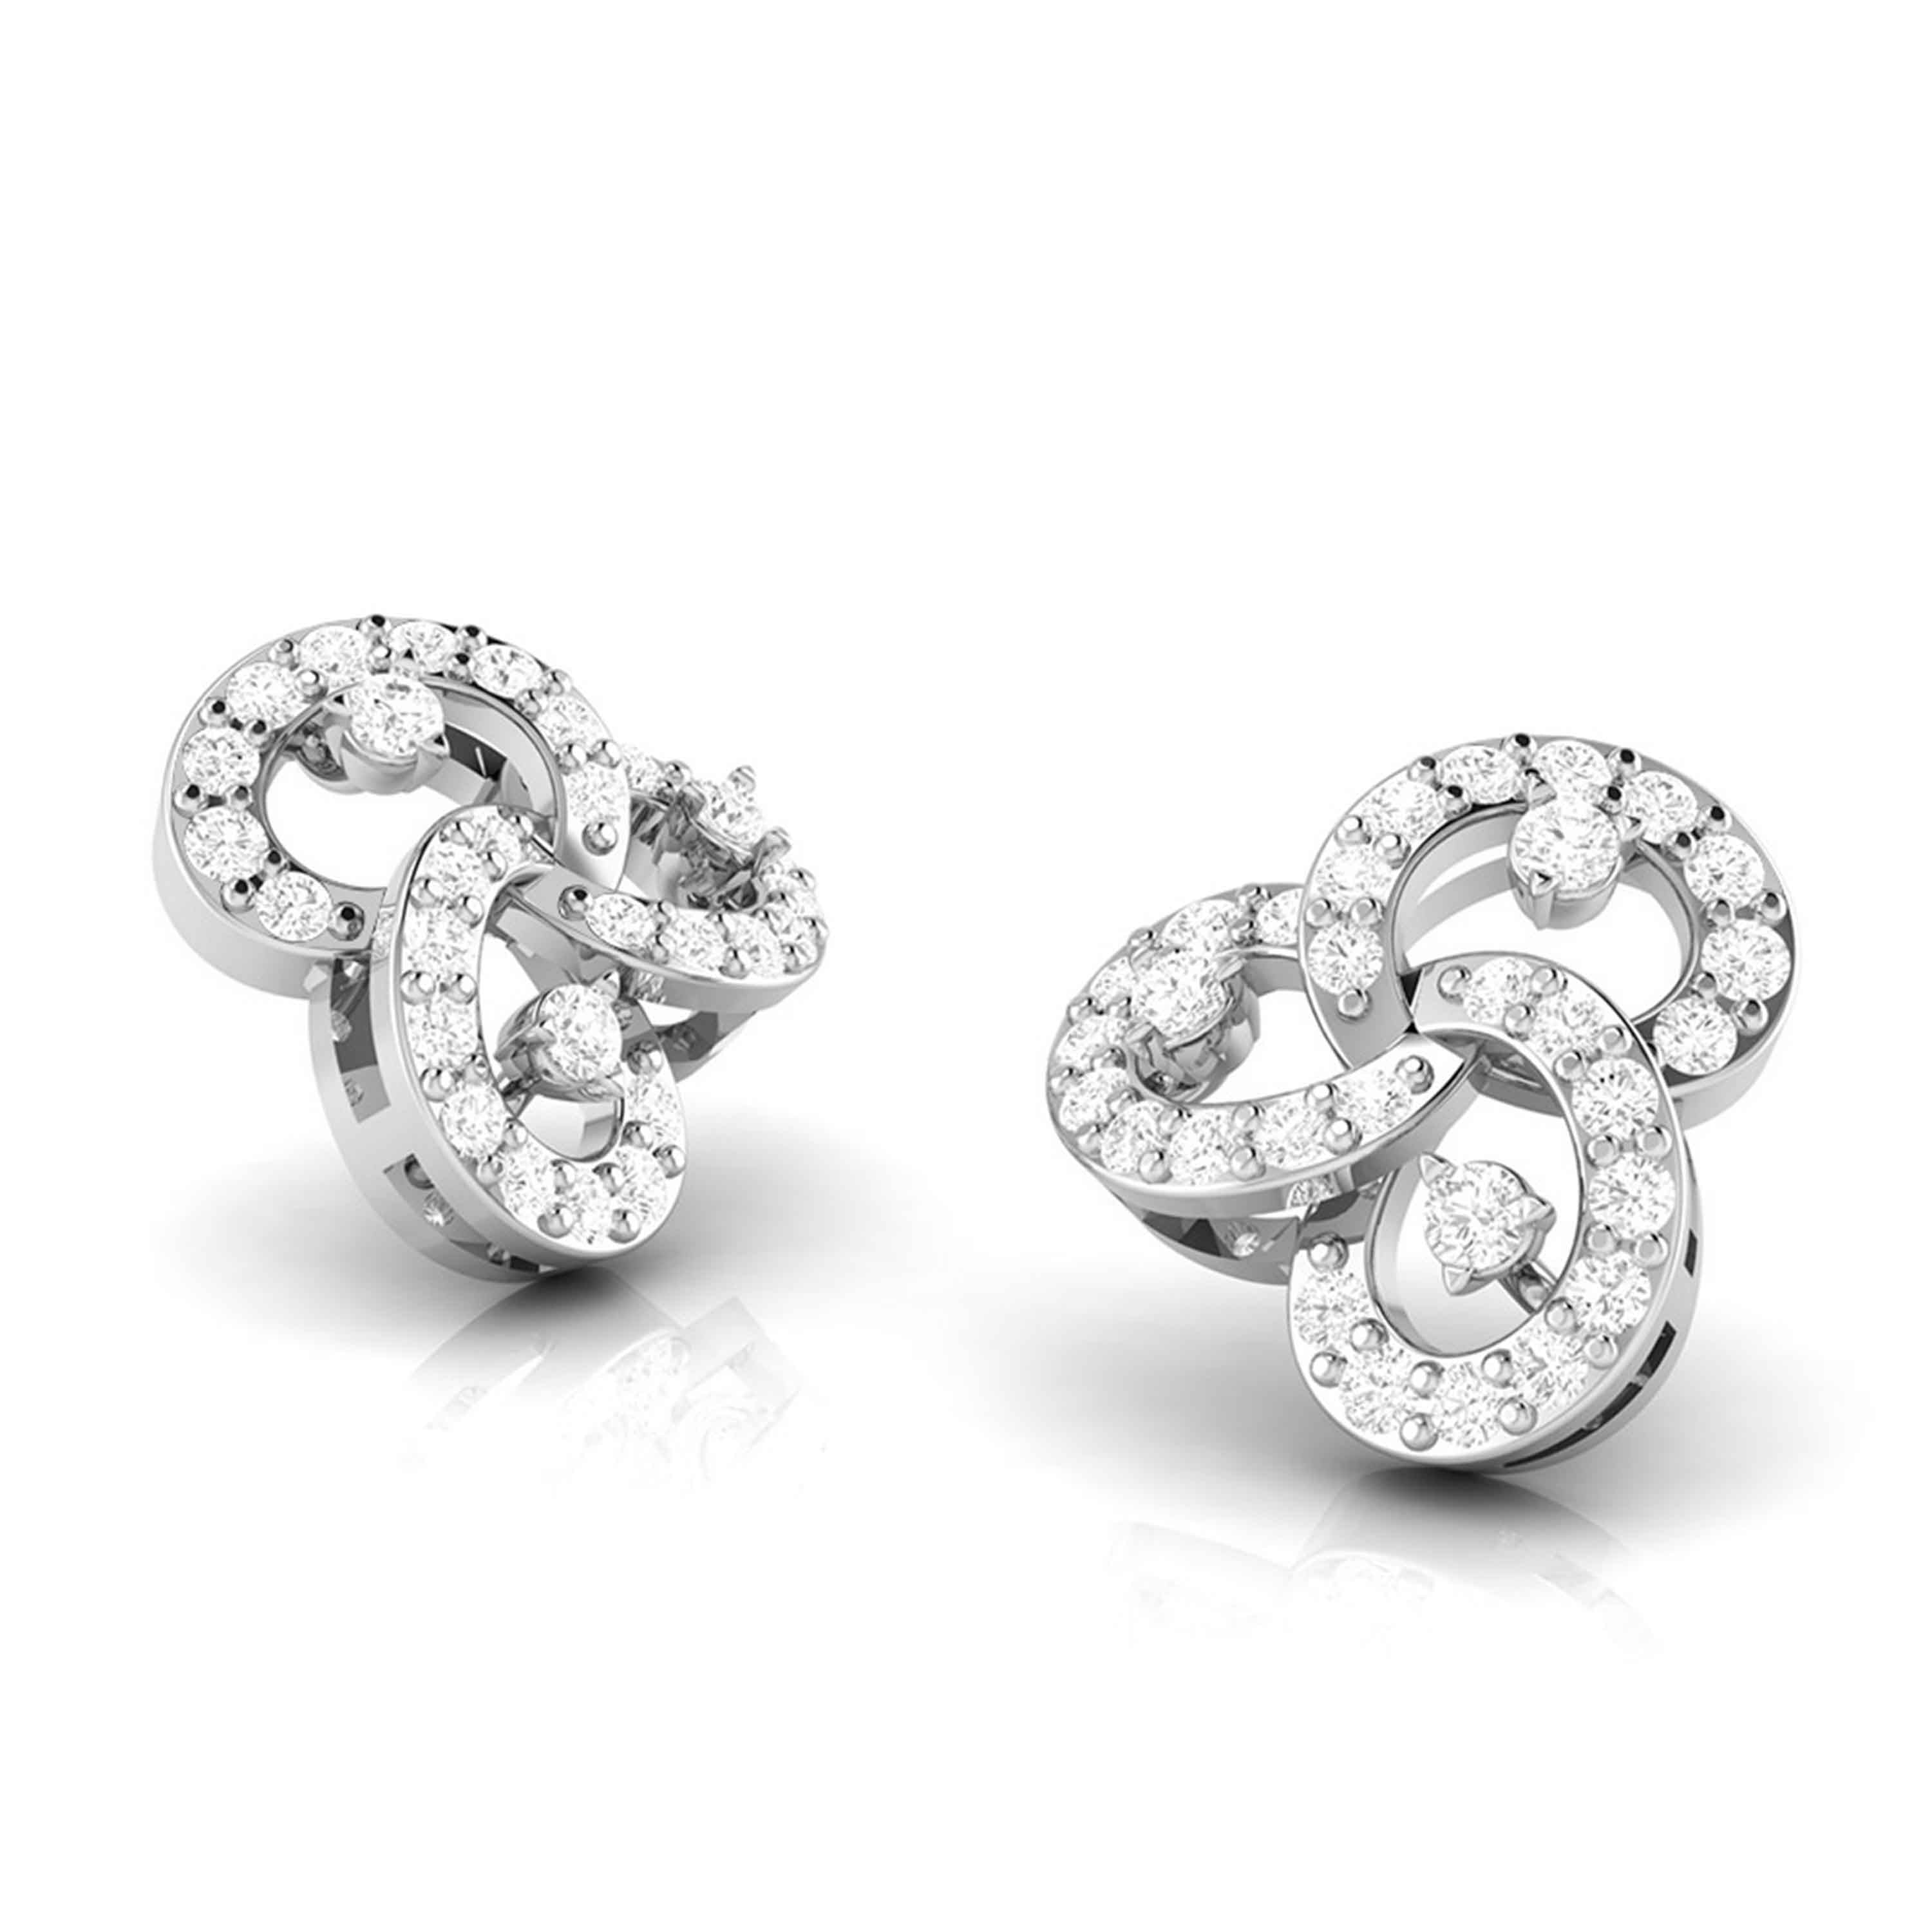 Platinum Earrings with Diamonds for Women JL PT E ST 2016